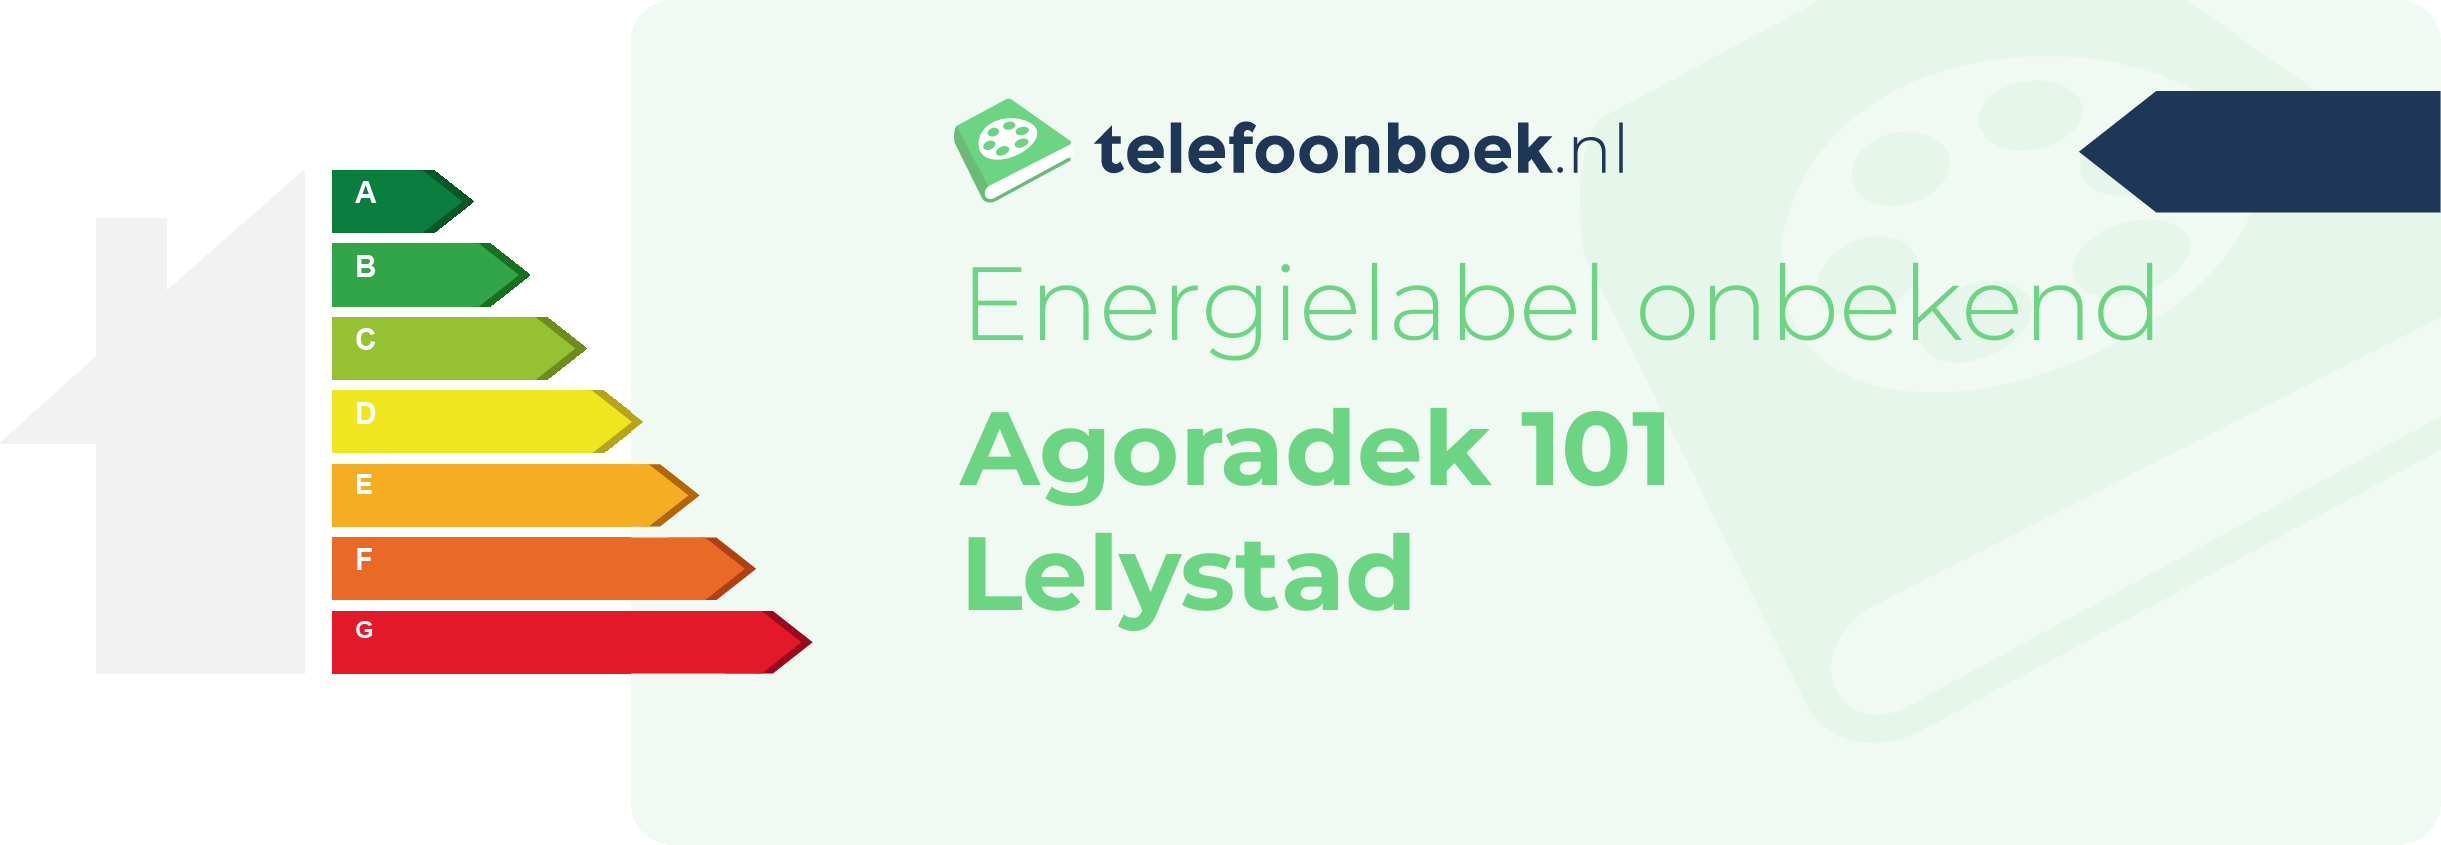 Energielabel Agoradek 101 Lelystad